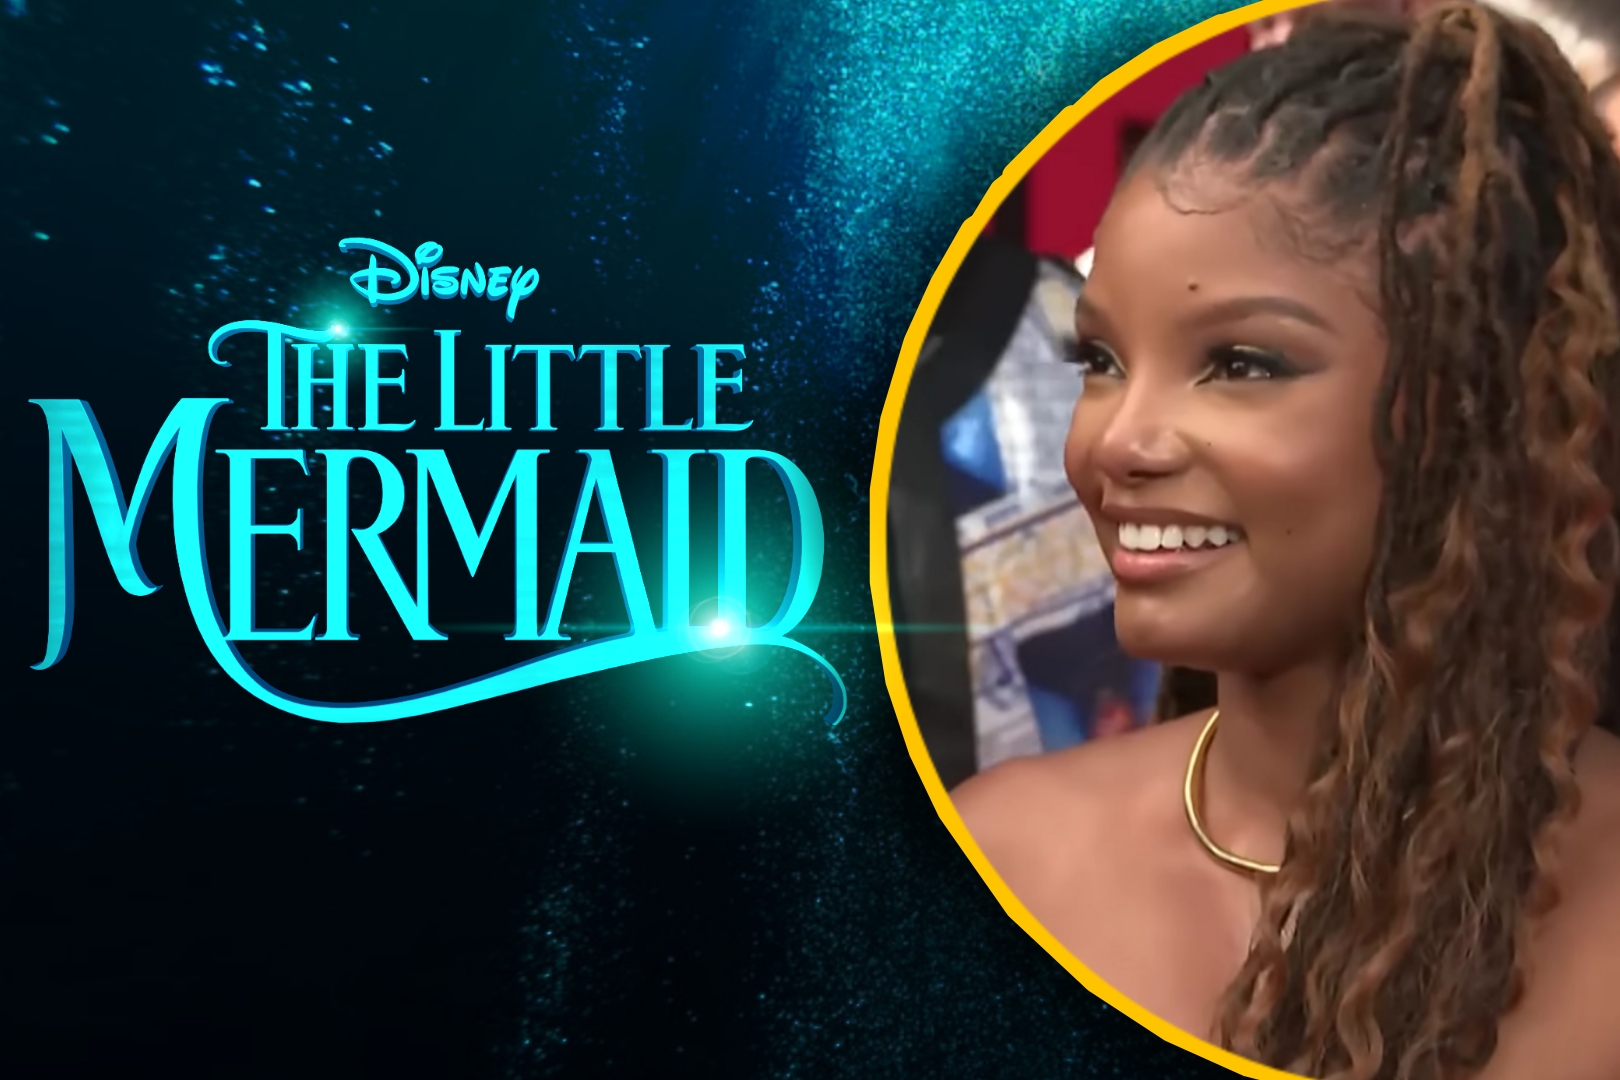 THE LITTLE MERMAID - Nàng Tiên Cá từ Disney bất ngờ tung Official Teaser